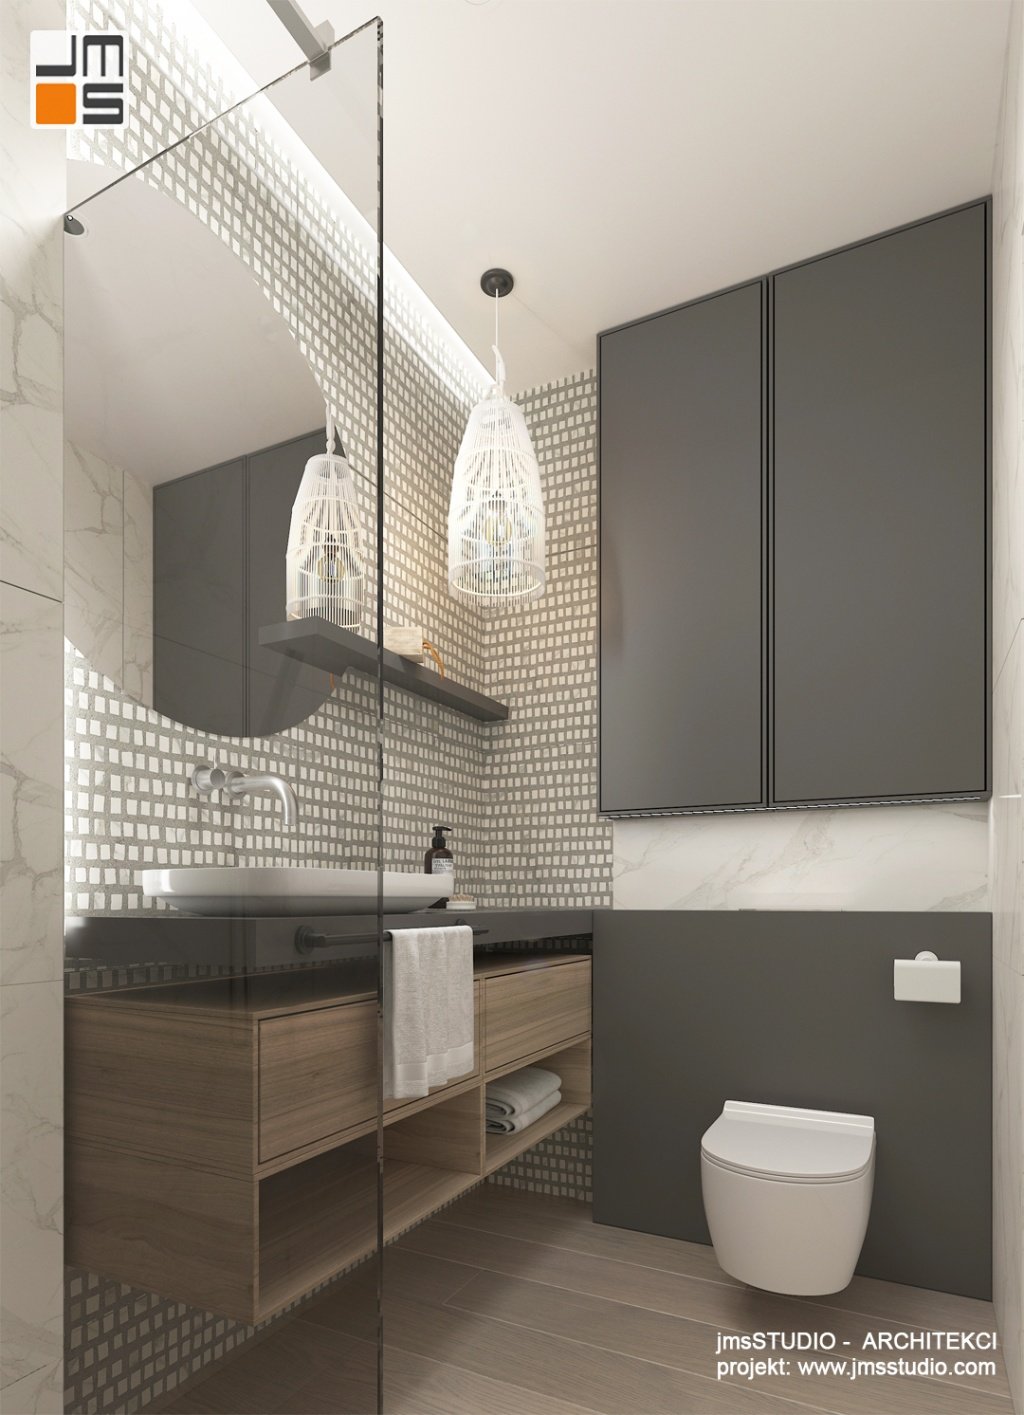 W małych wnętrzach łazienek  w projekcie  warto wykorzystać przestrzeń nad Gebertem do zabudowania szafek na różne niezbędne rzeczy